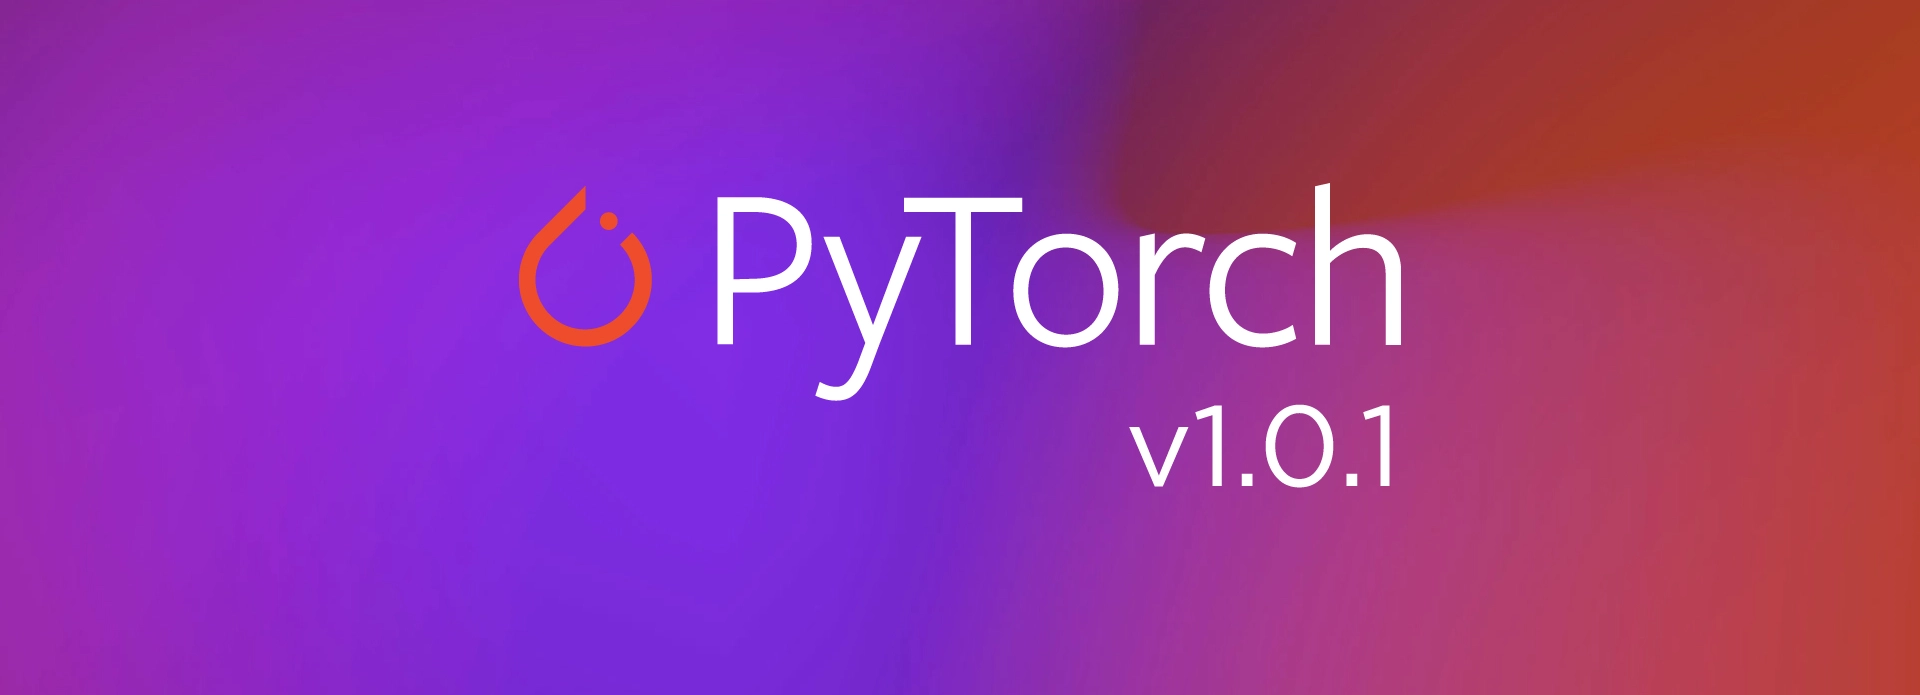 PyTorch-1.0.1.jpg